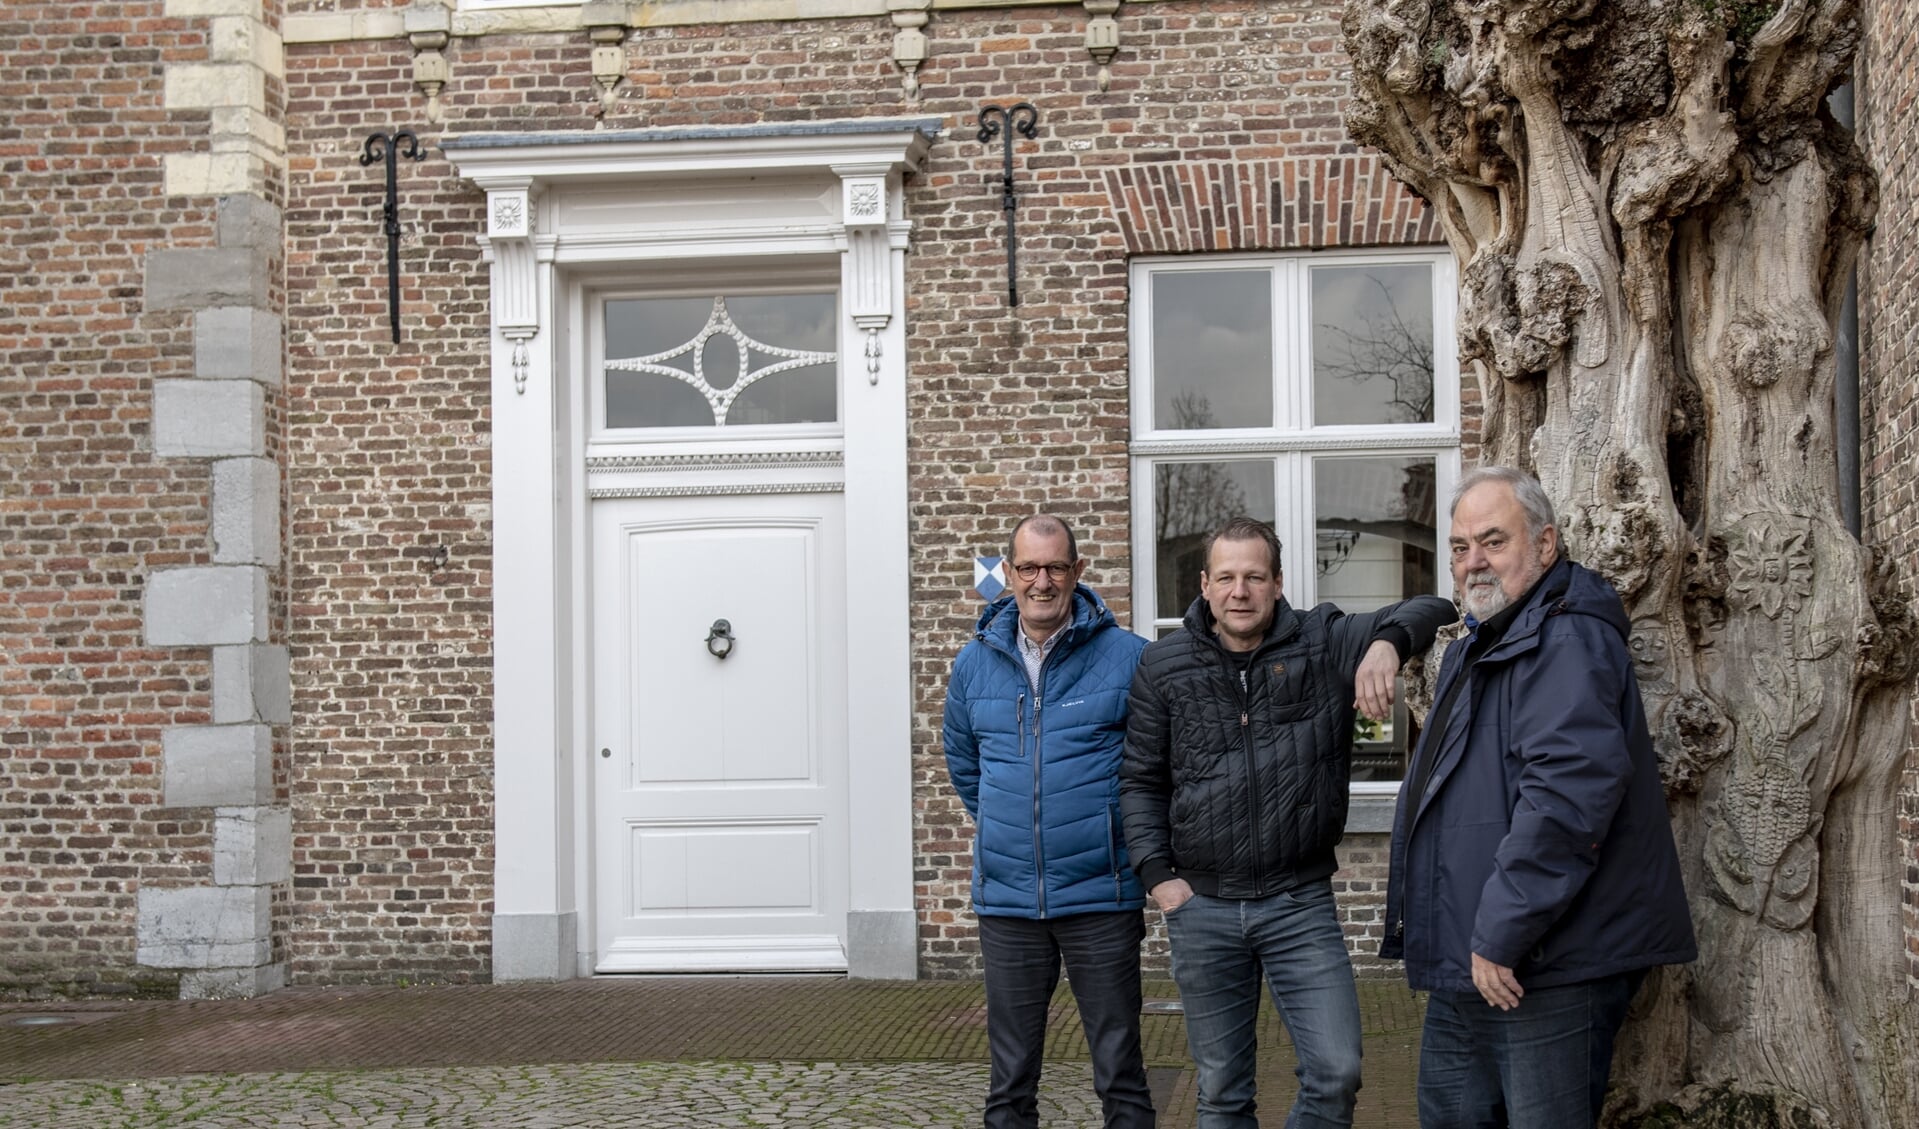 v.l.n.r.: Ad van der Heijden, René Voss en Frans van den Heuvel.